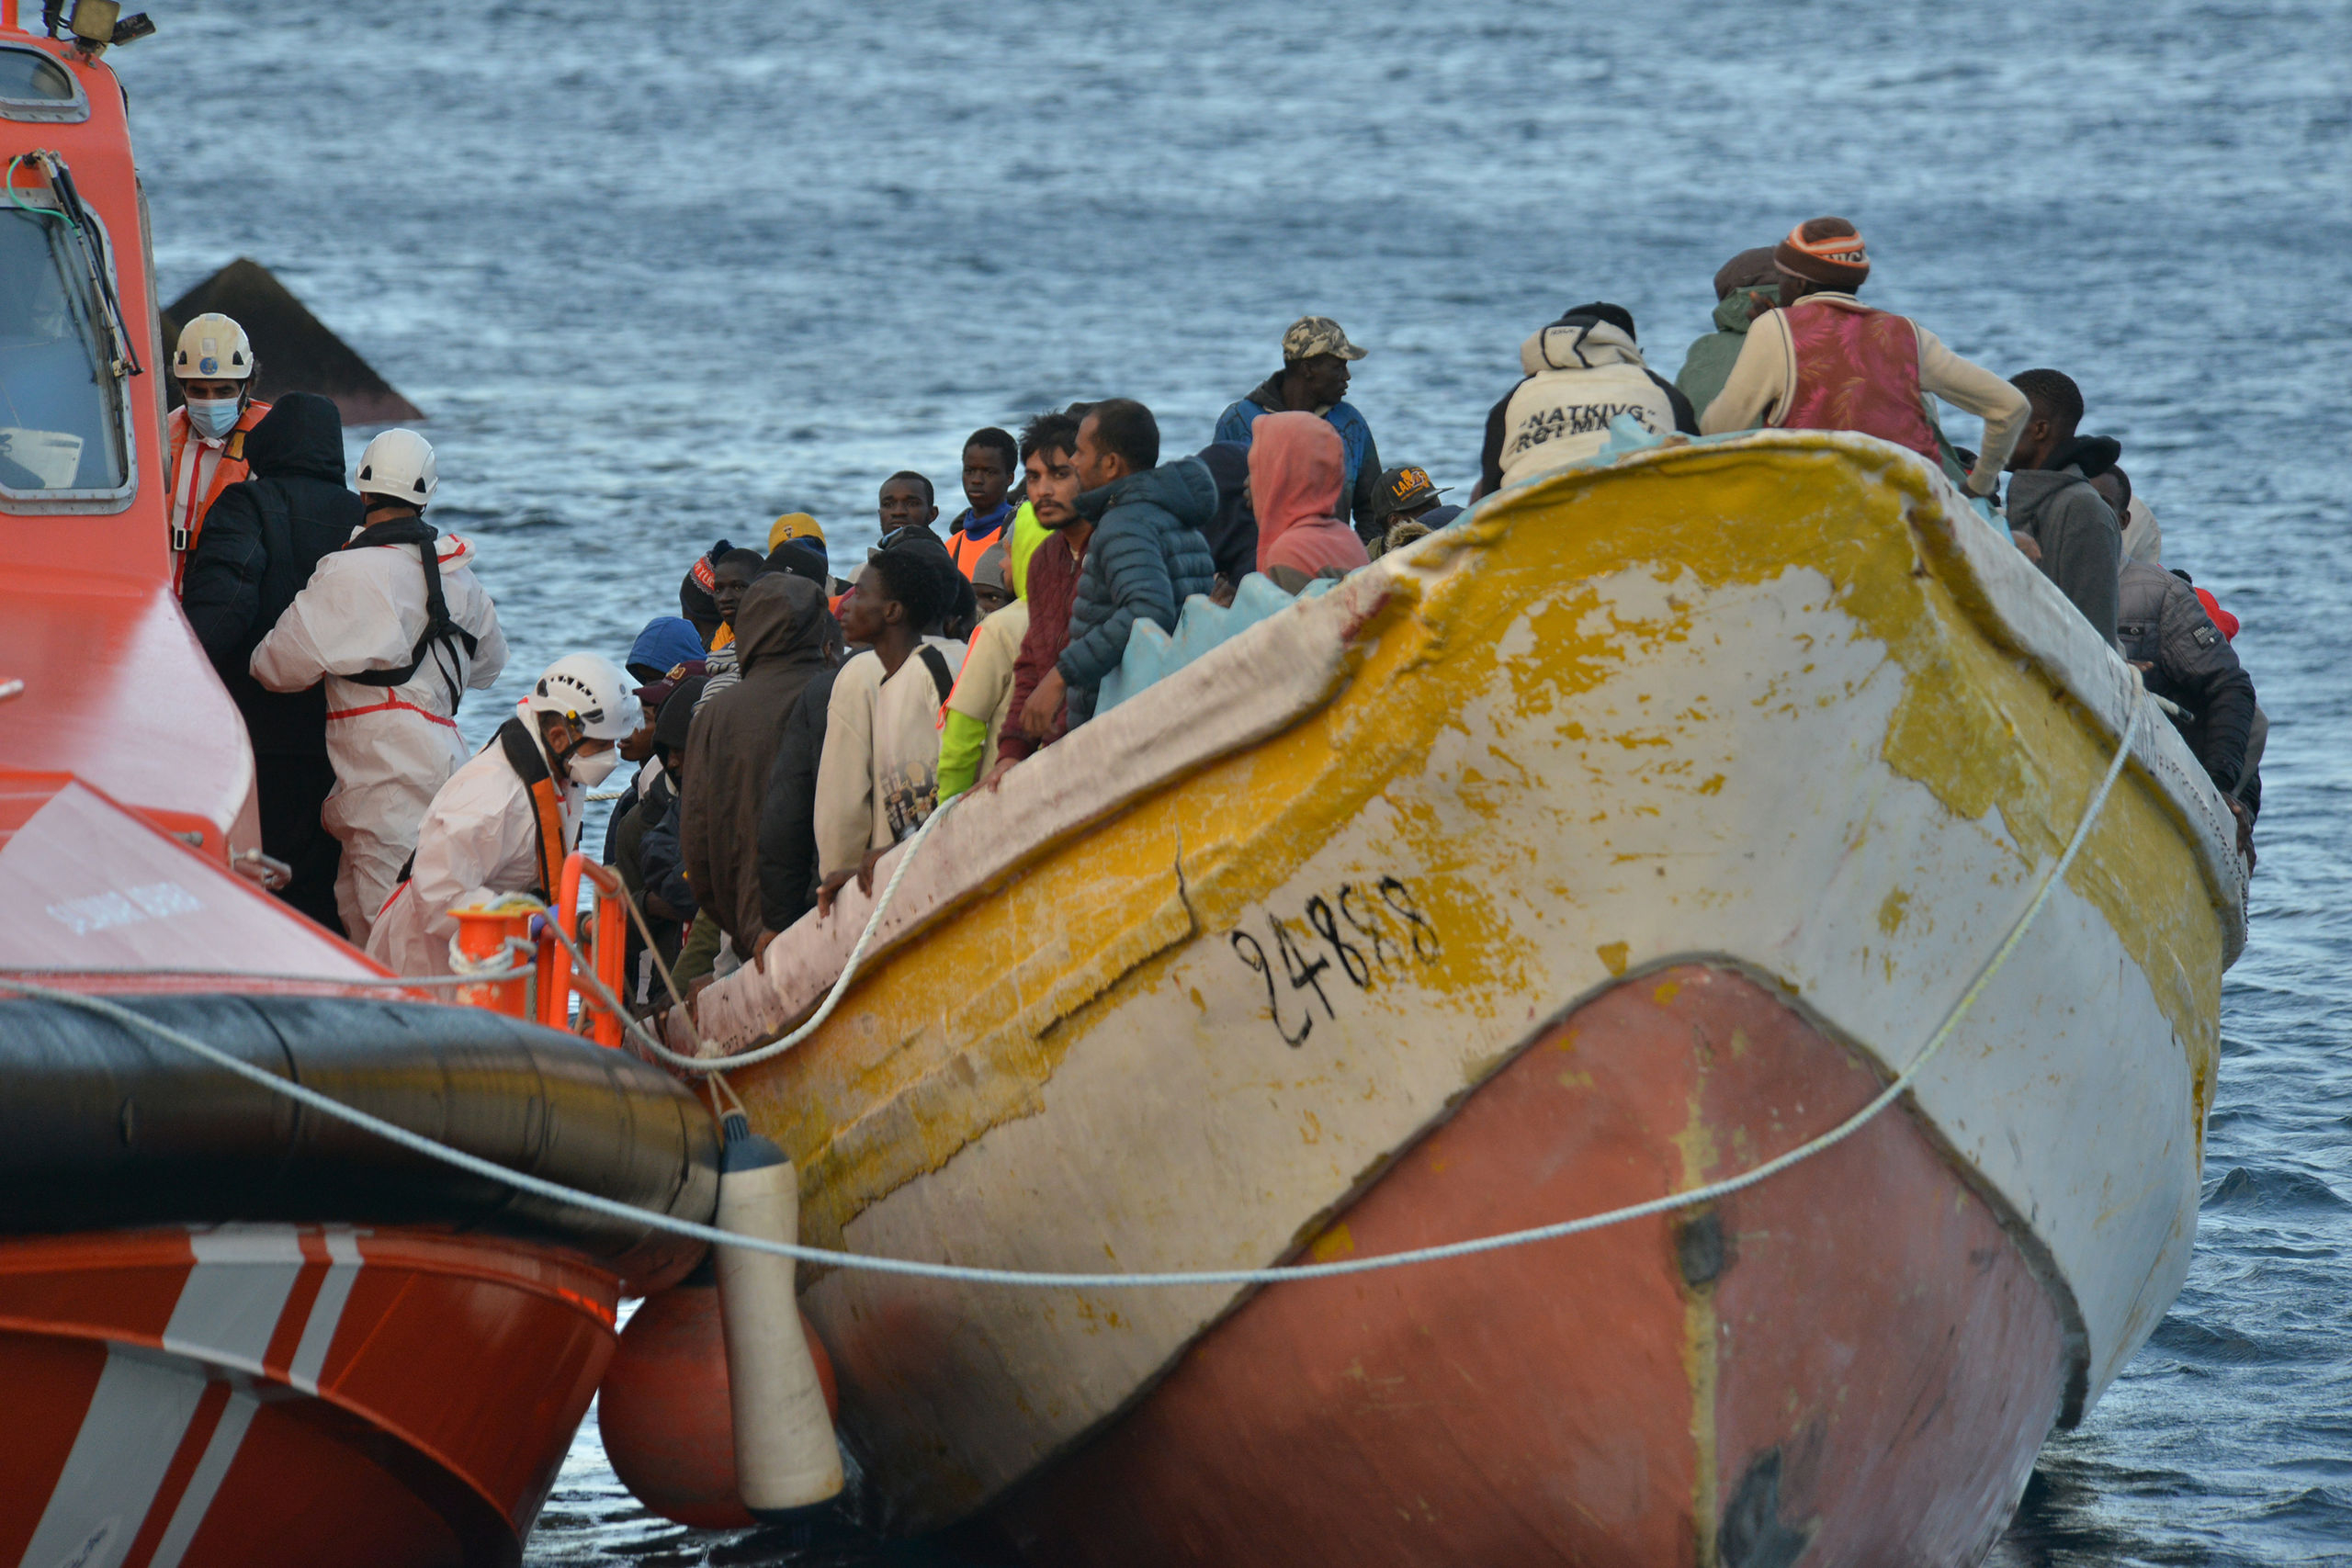 Emergencia social en Lanzarote por la "situación desbordante" que provoca la inmigración irregular